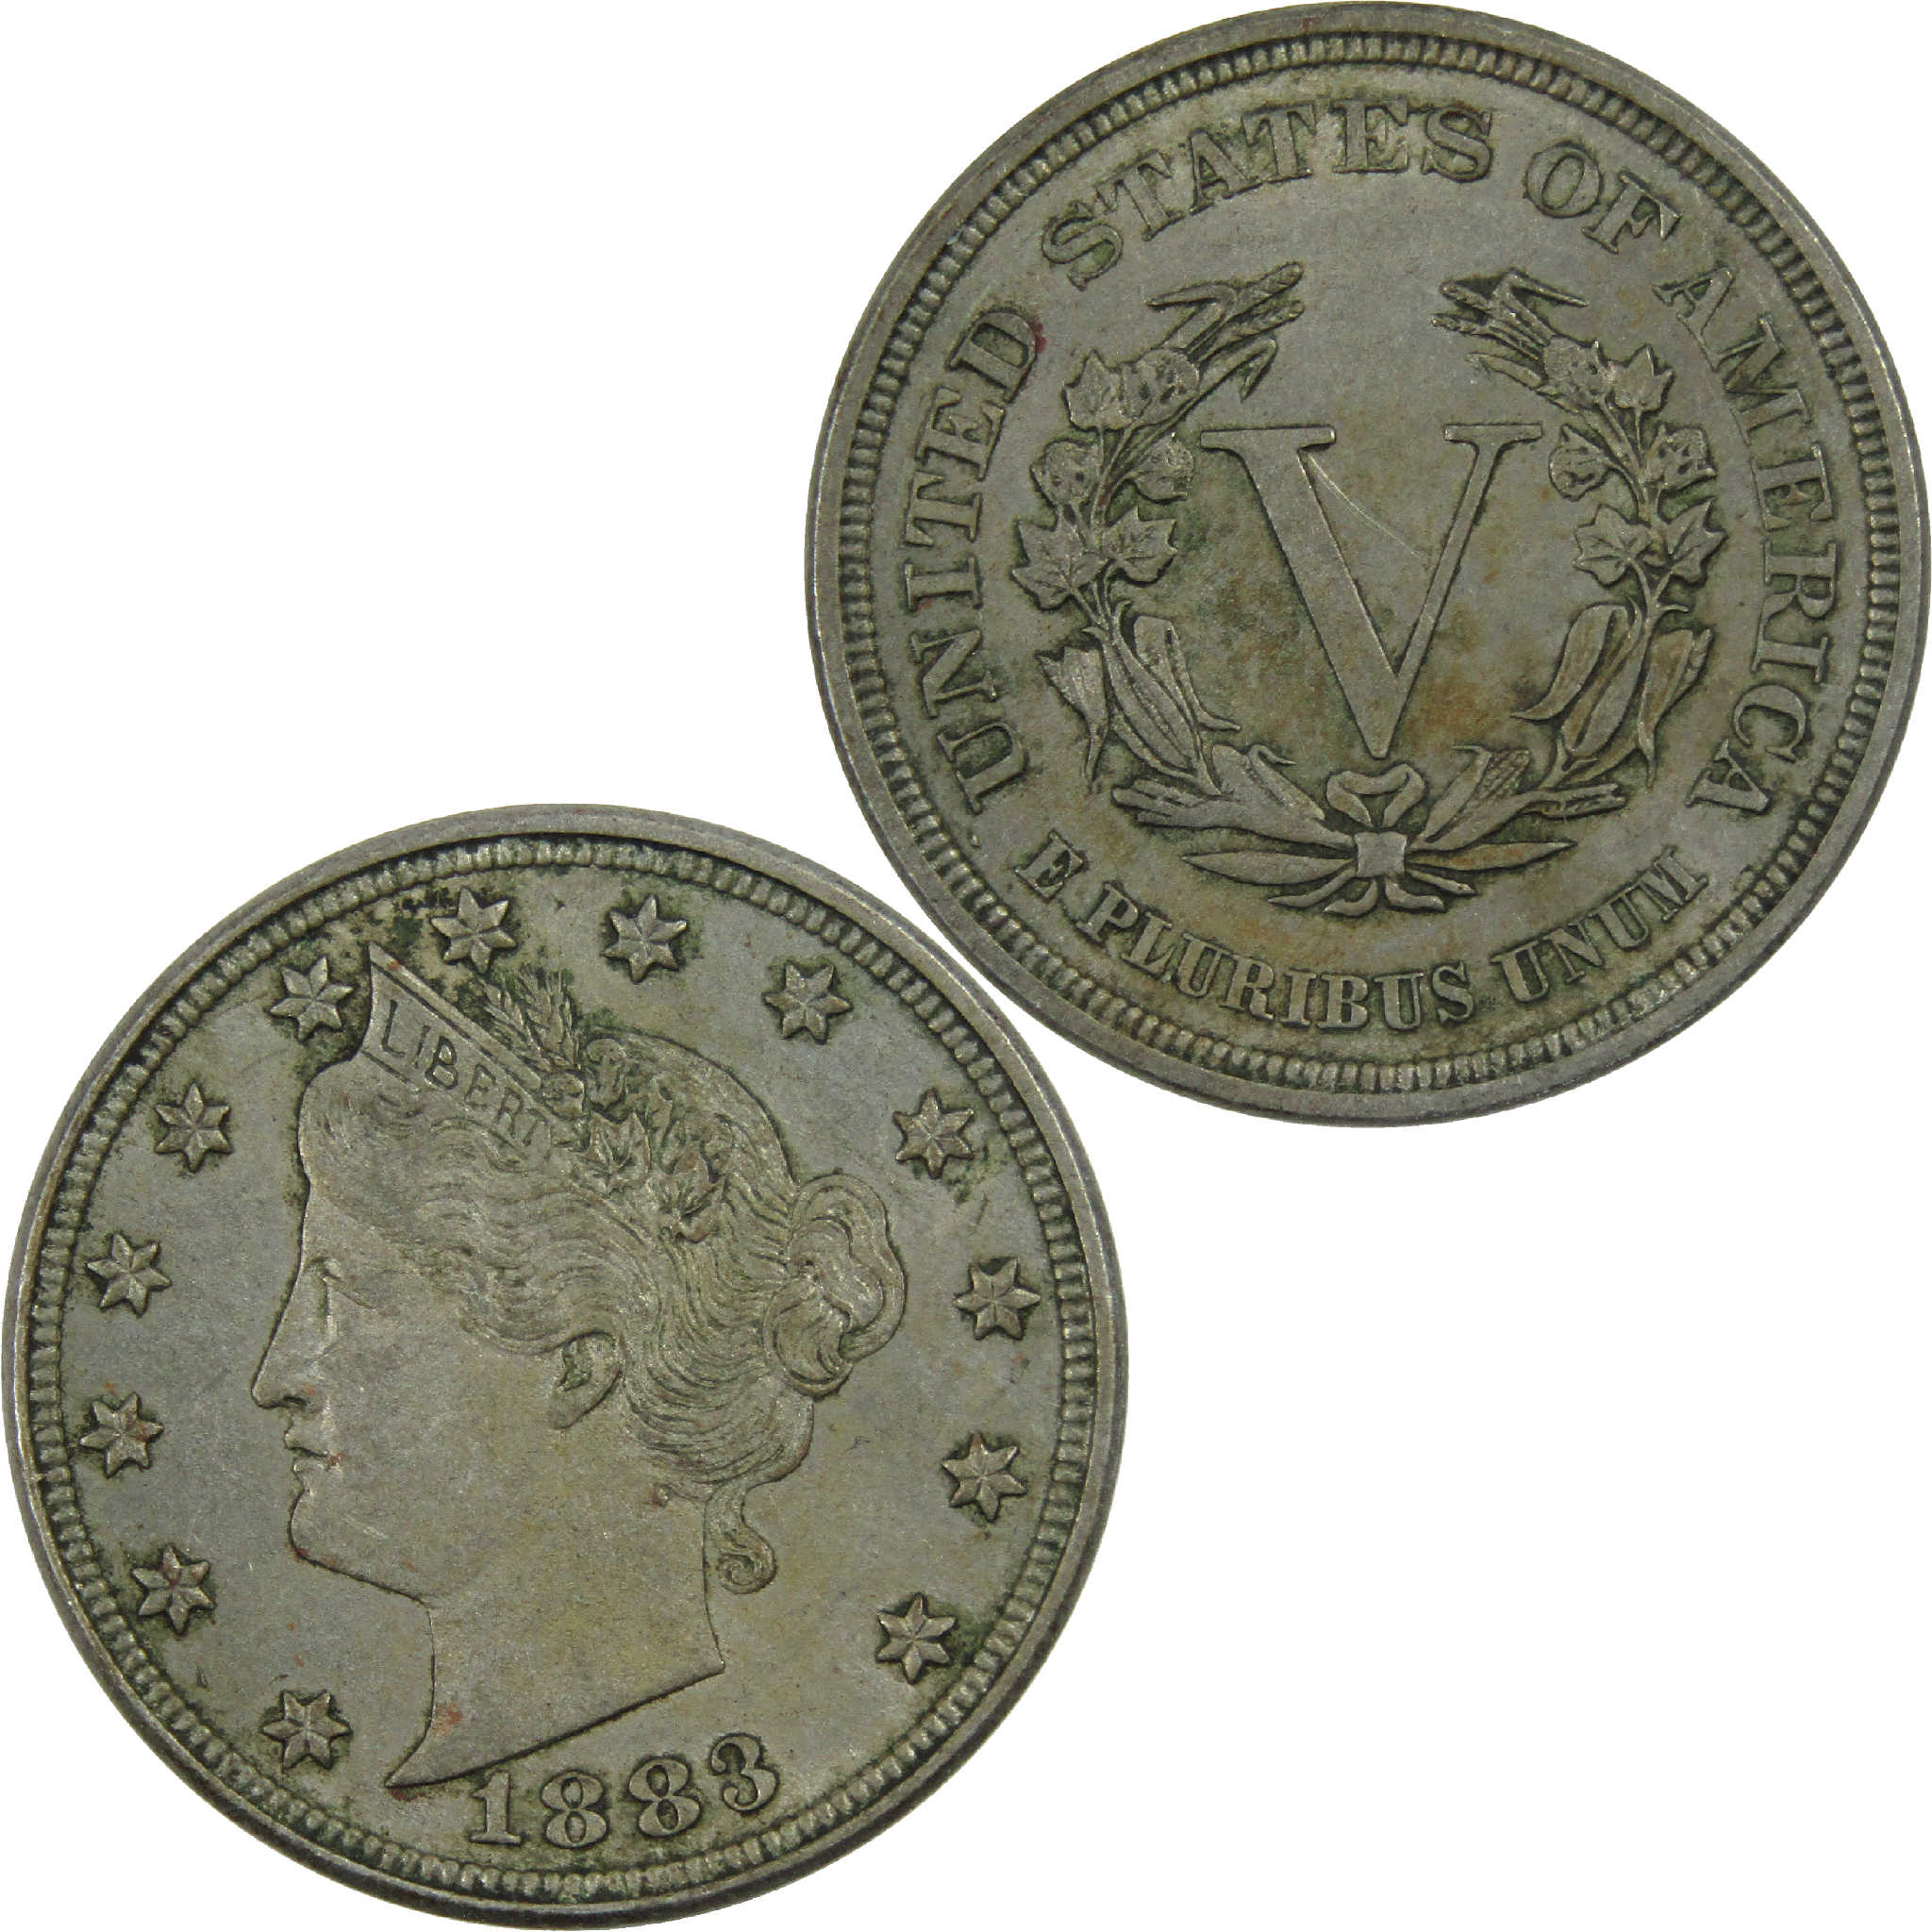 1883 No Cents Liberty Head V Nickel XF EF Extremely Fine SKU:I12610